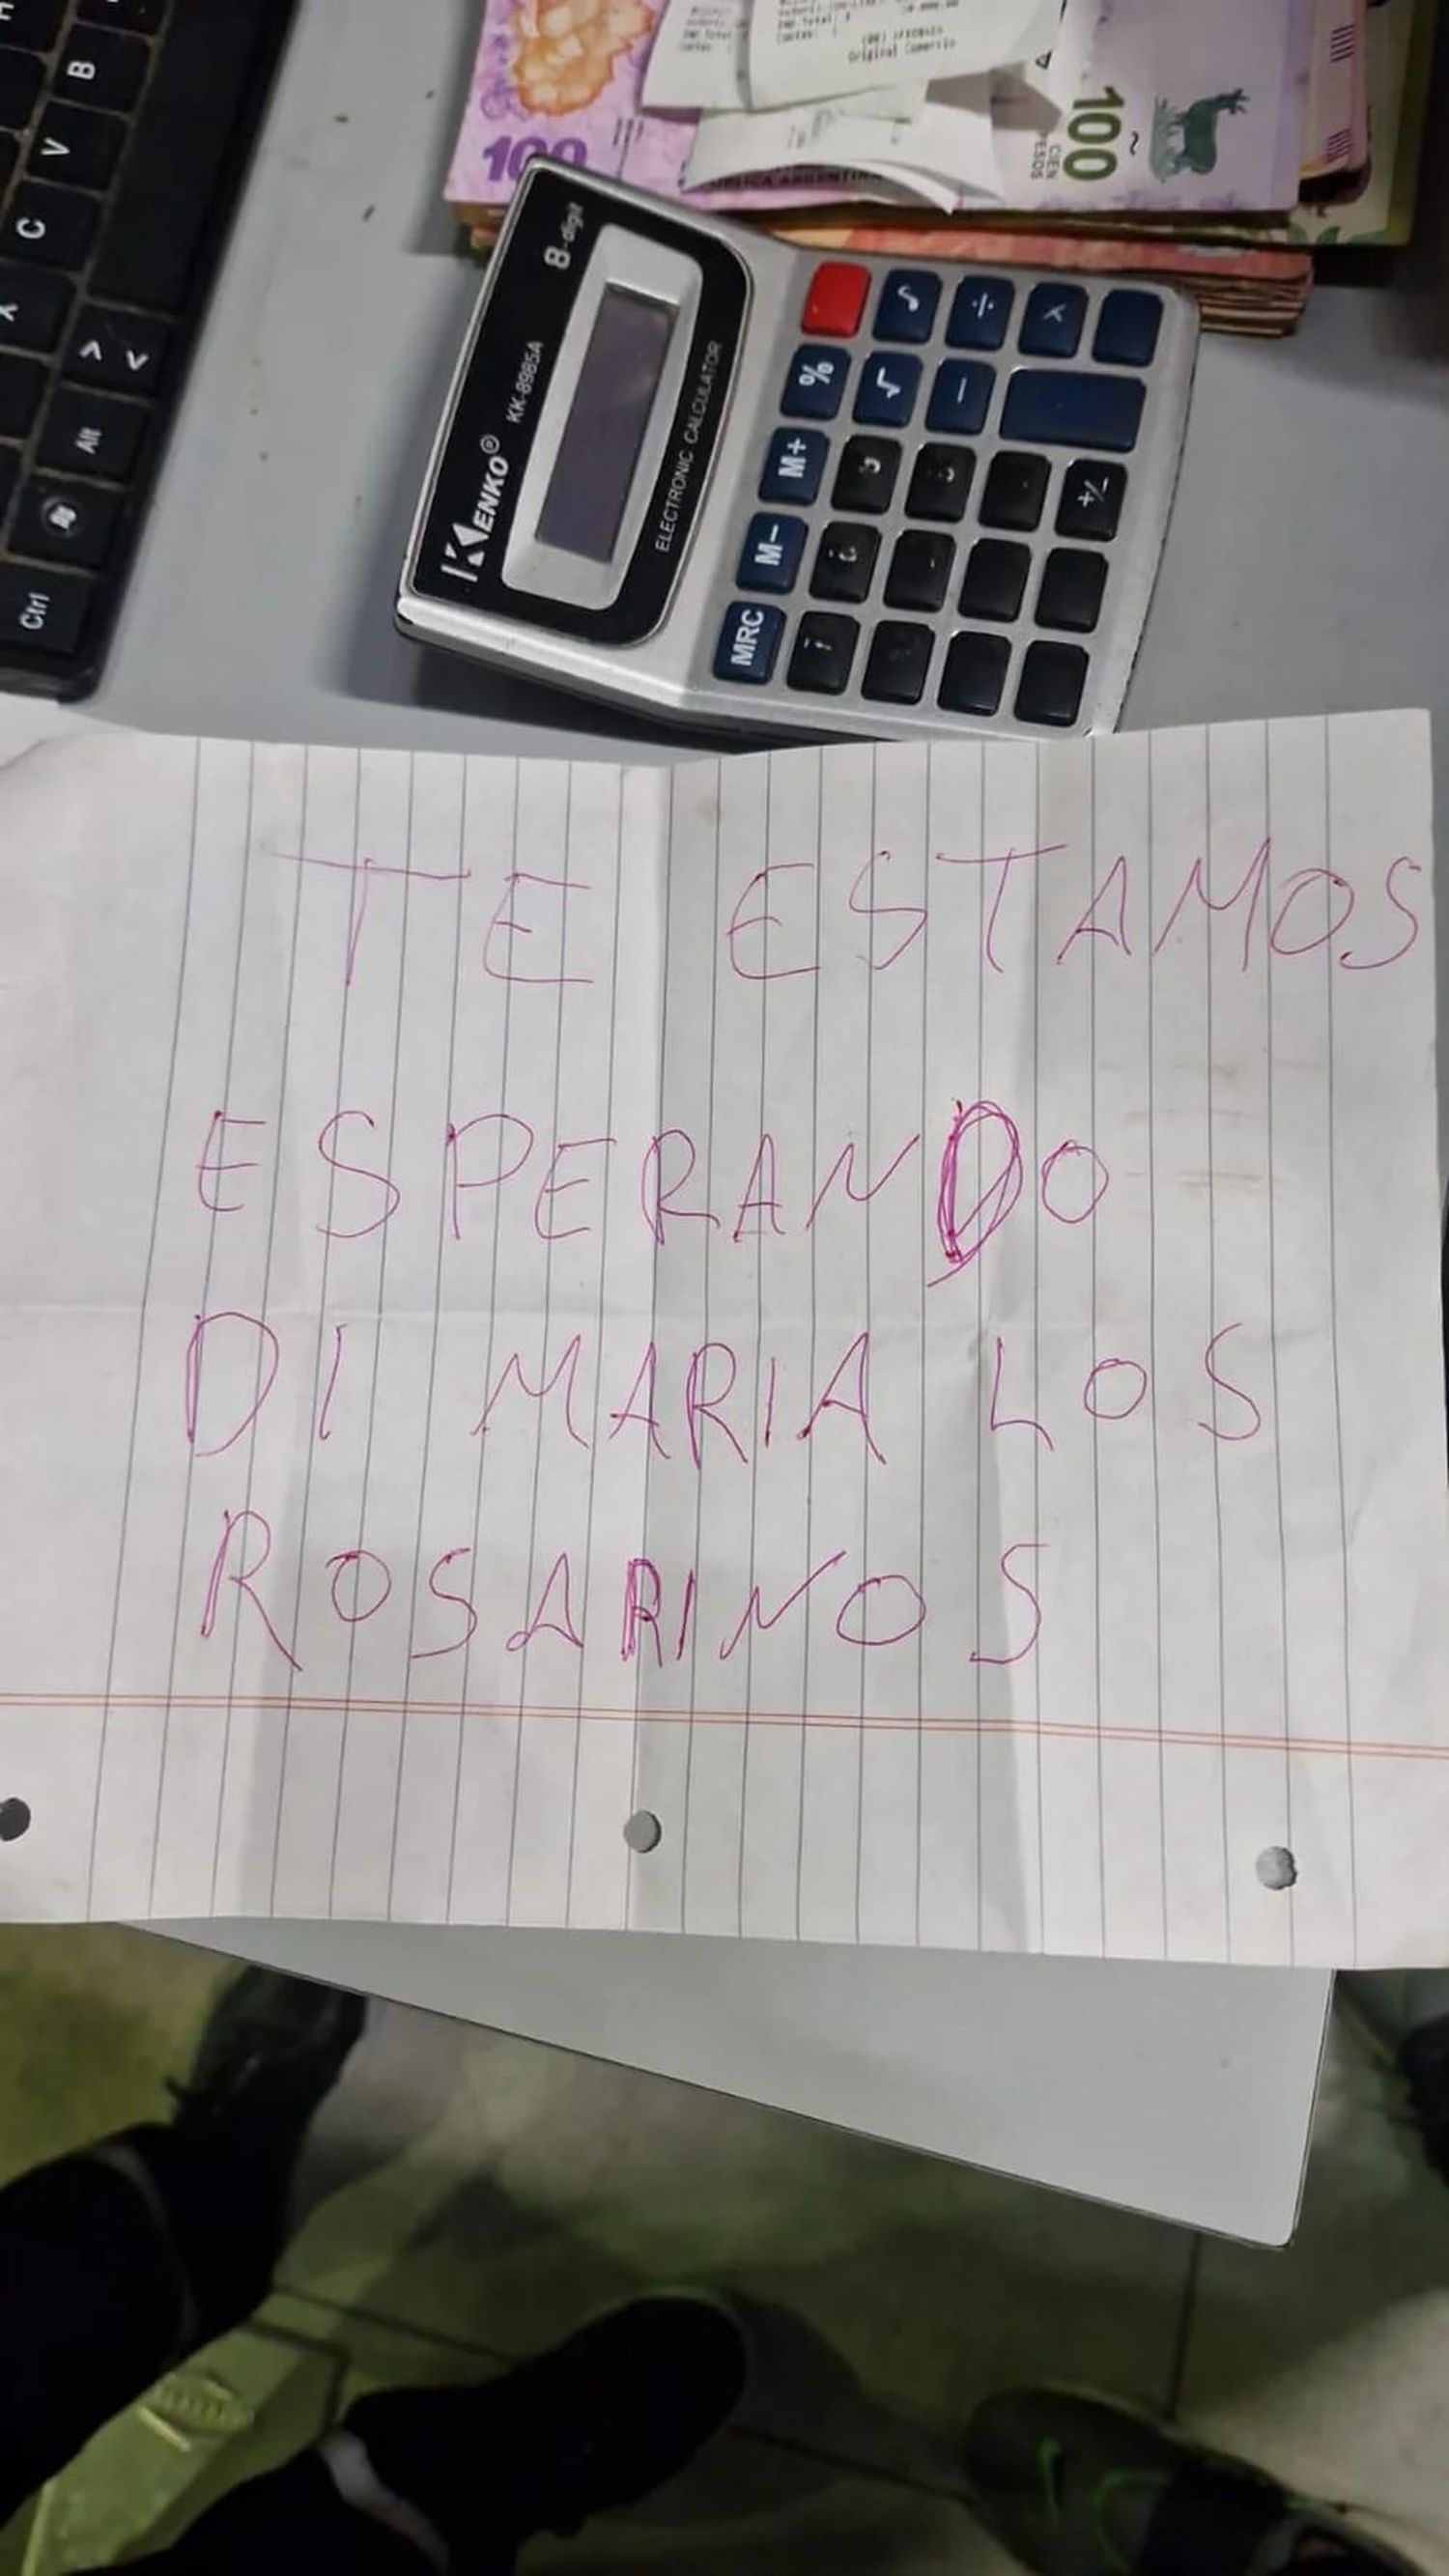 Balearon una estación de servicio en Rosario y dejaron otra amenaza a Ángel Di María